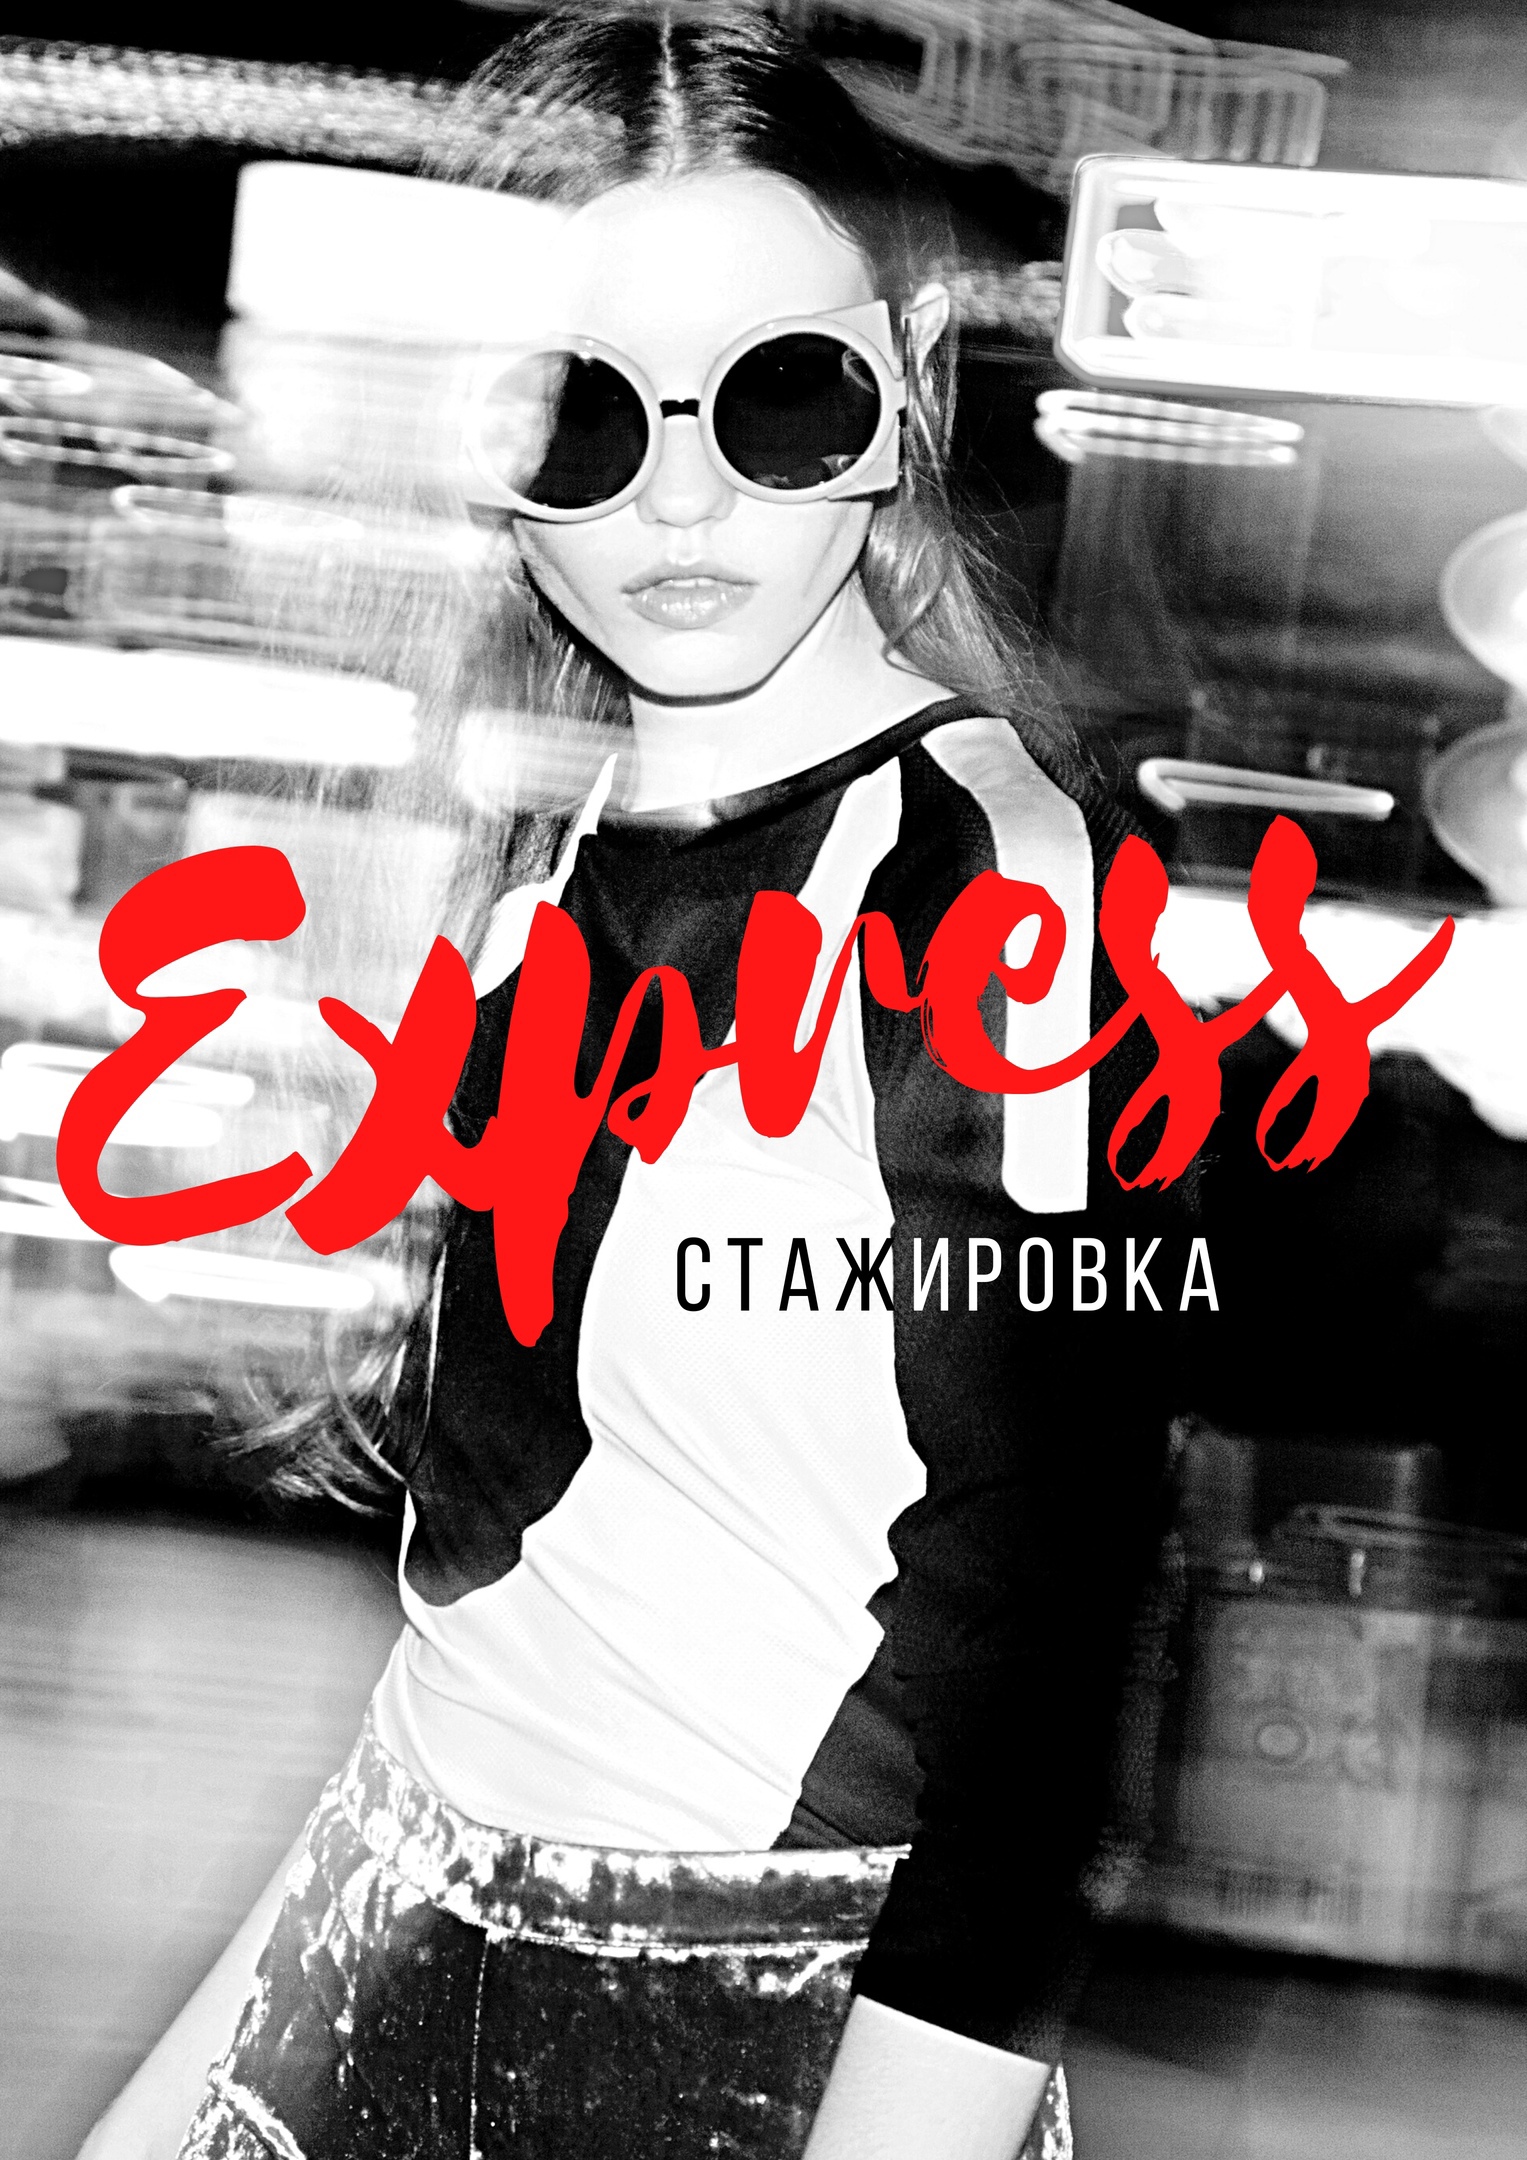 Kurs_express